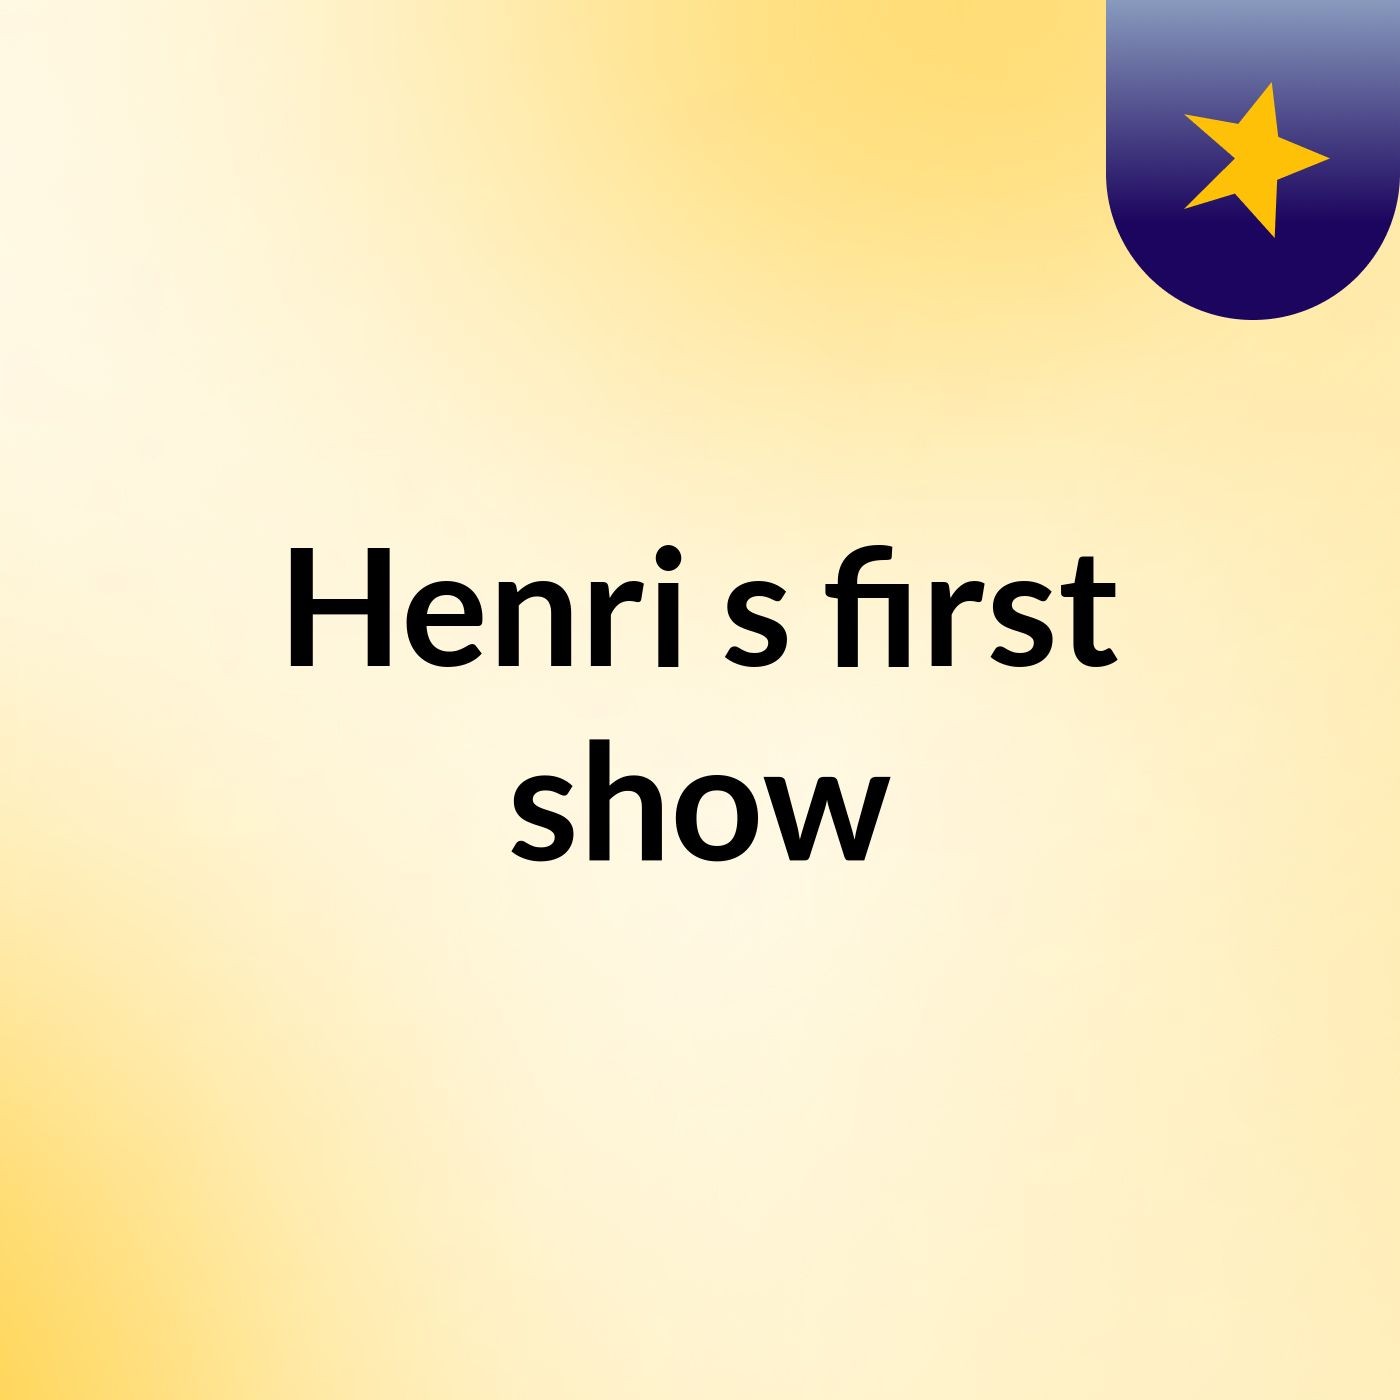 Henri's first show